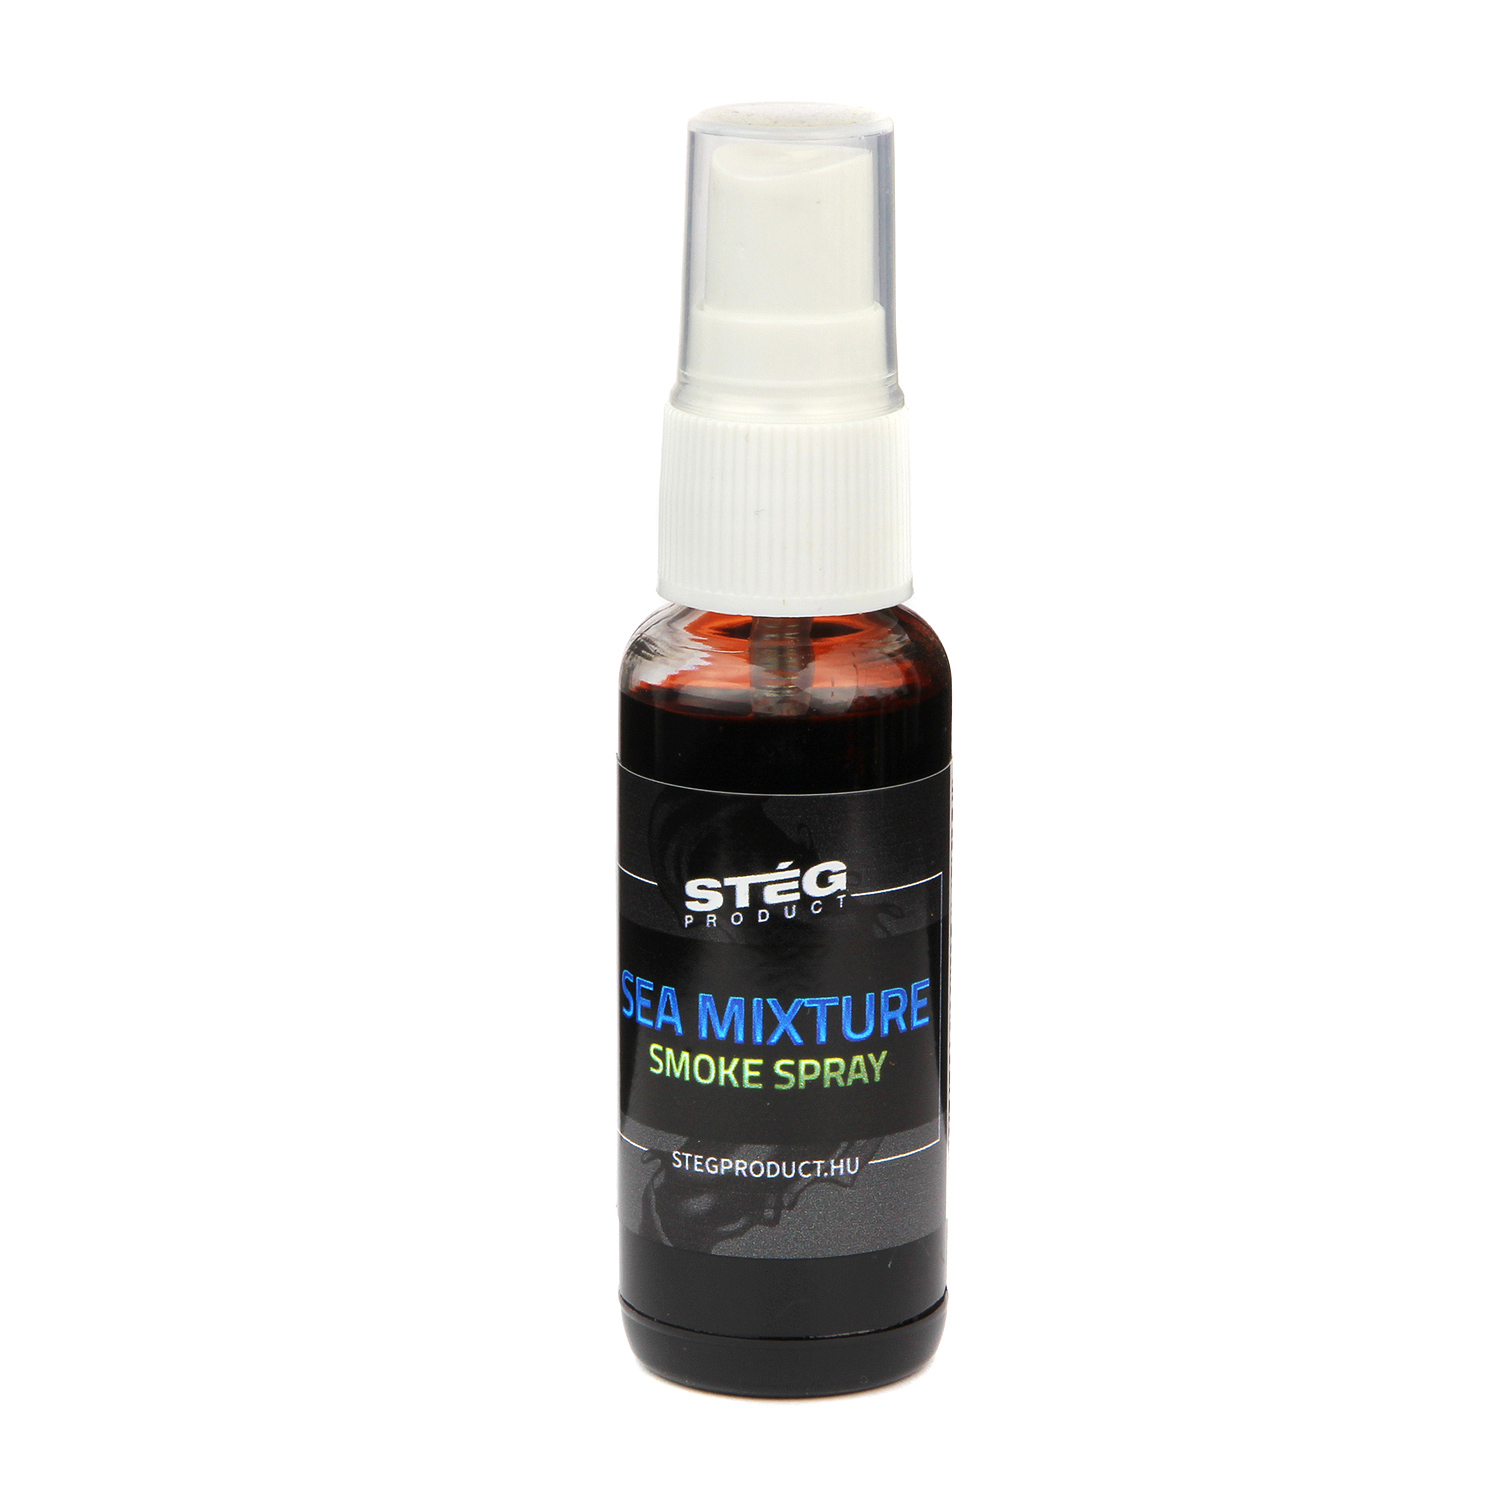 Stg Product Smoke Spray Sea Mixture 30ml